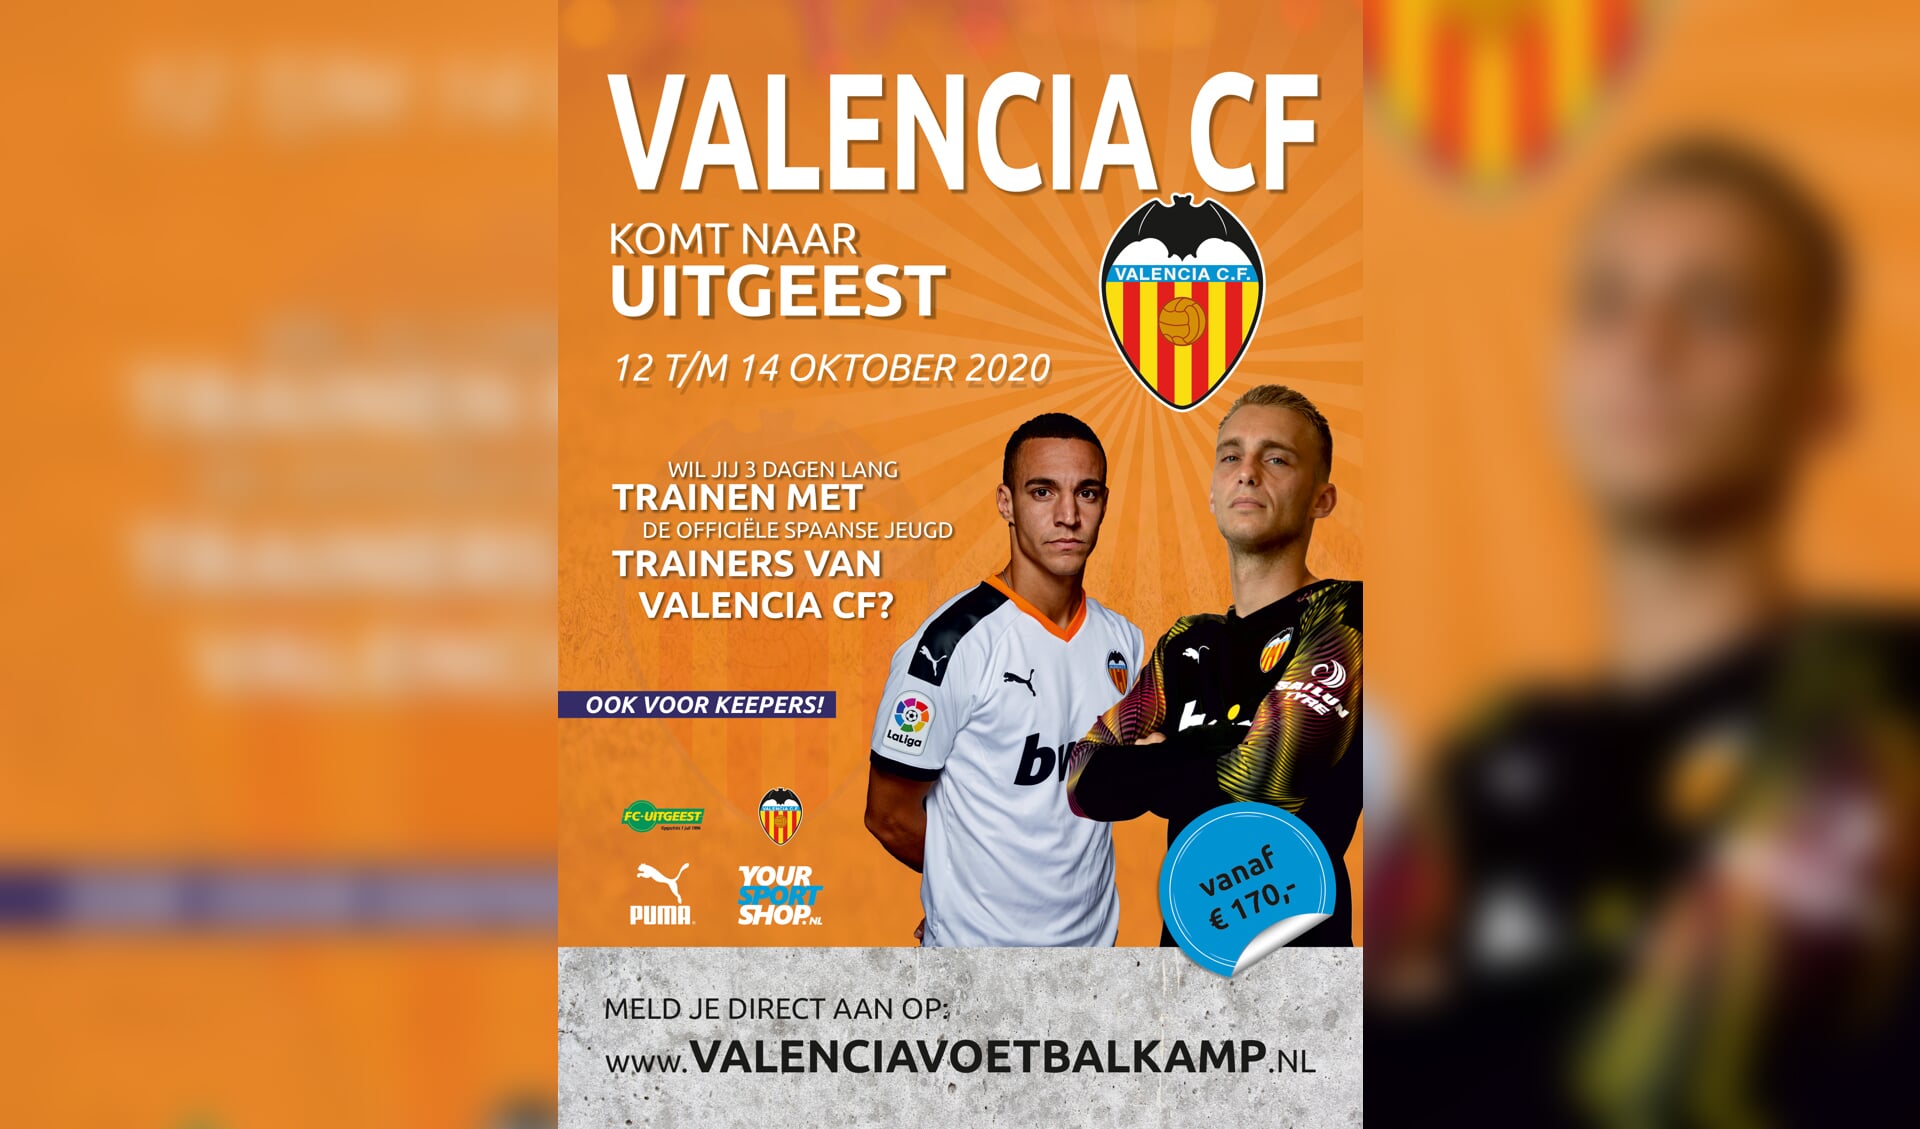 De flyer van de Valencia Voetbalkamp.